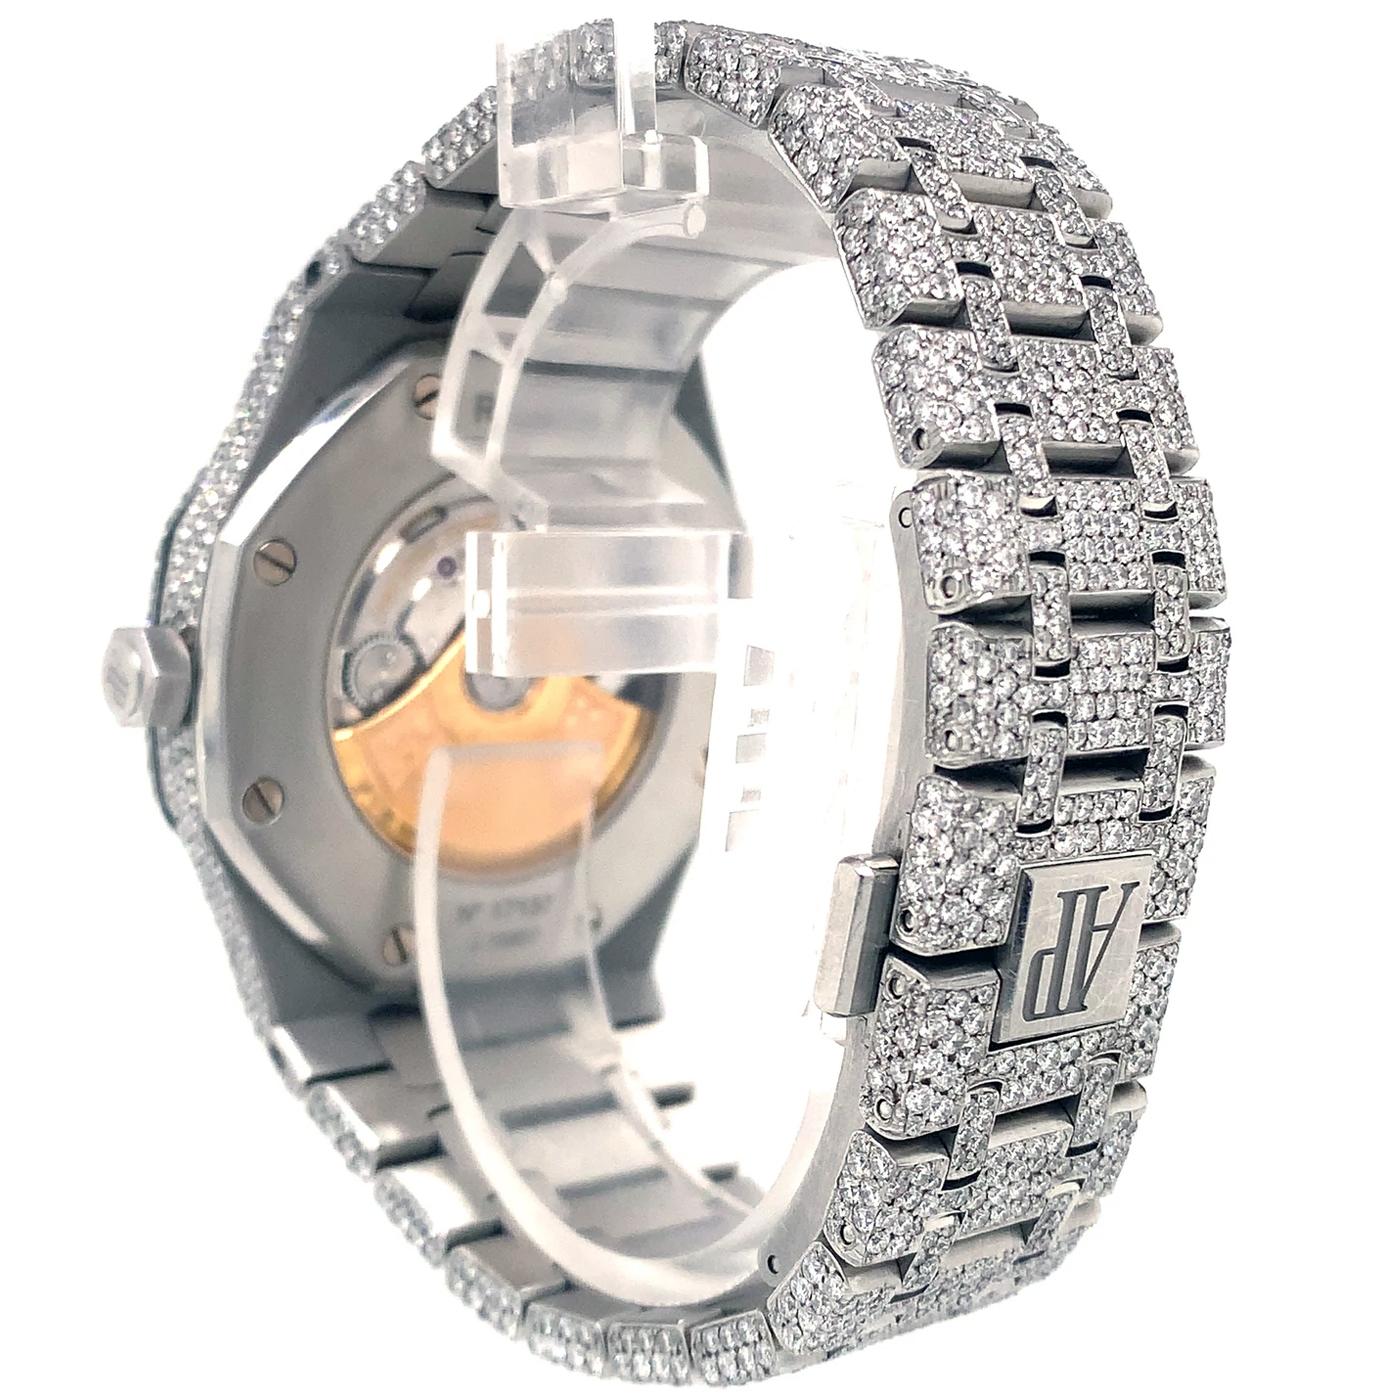 Modernist Audemars Piguet Royal Oak Silver Iced Out Diamond Selfwinding Watch